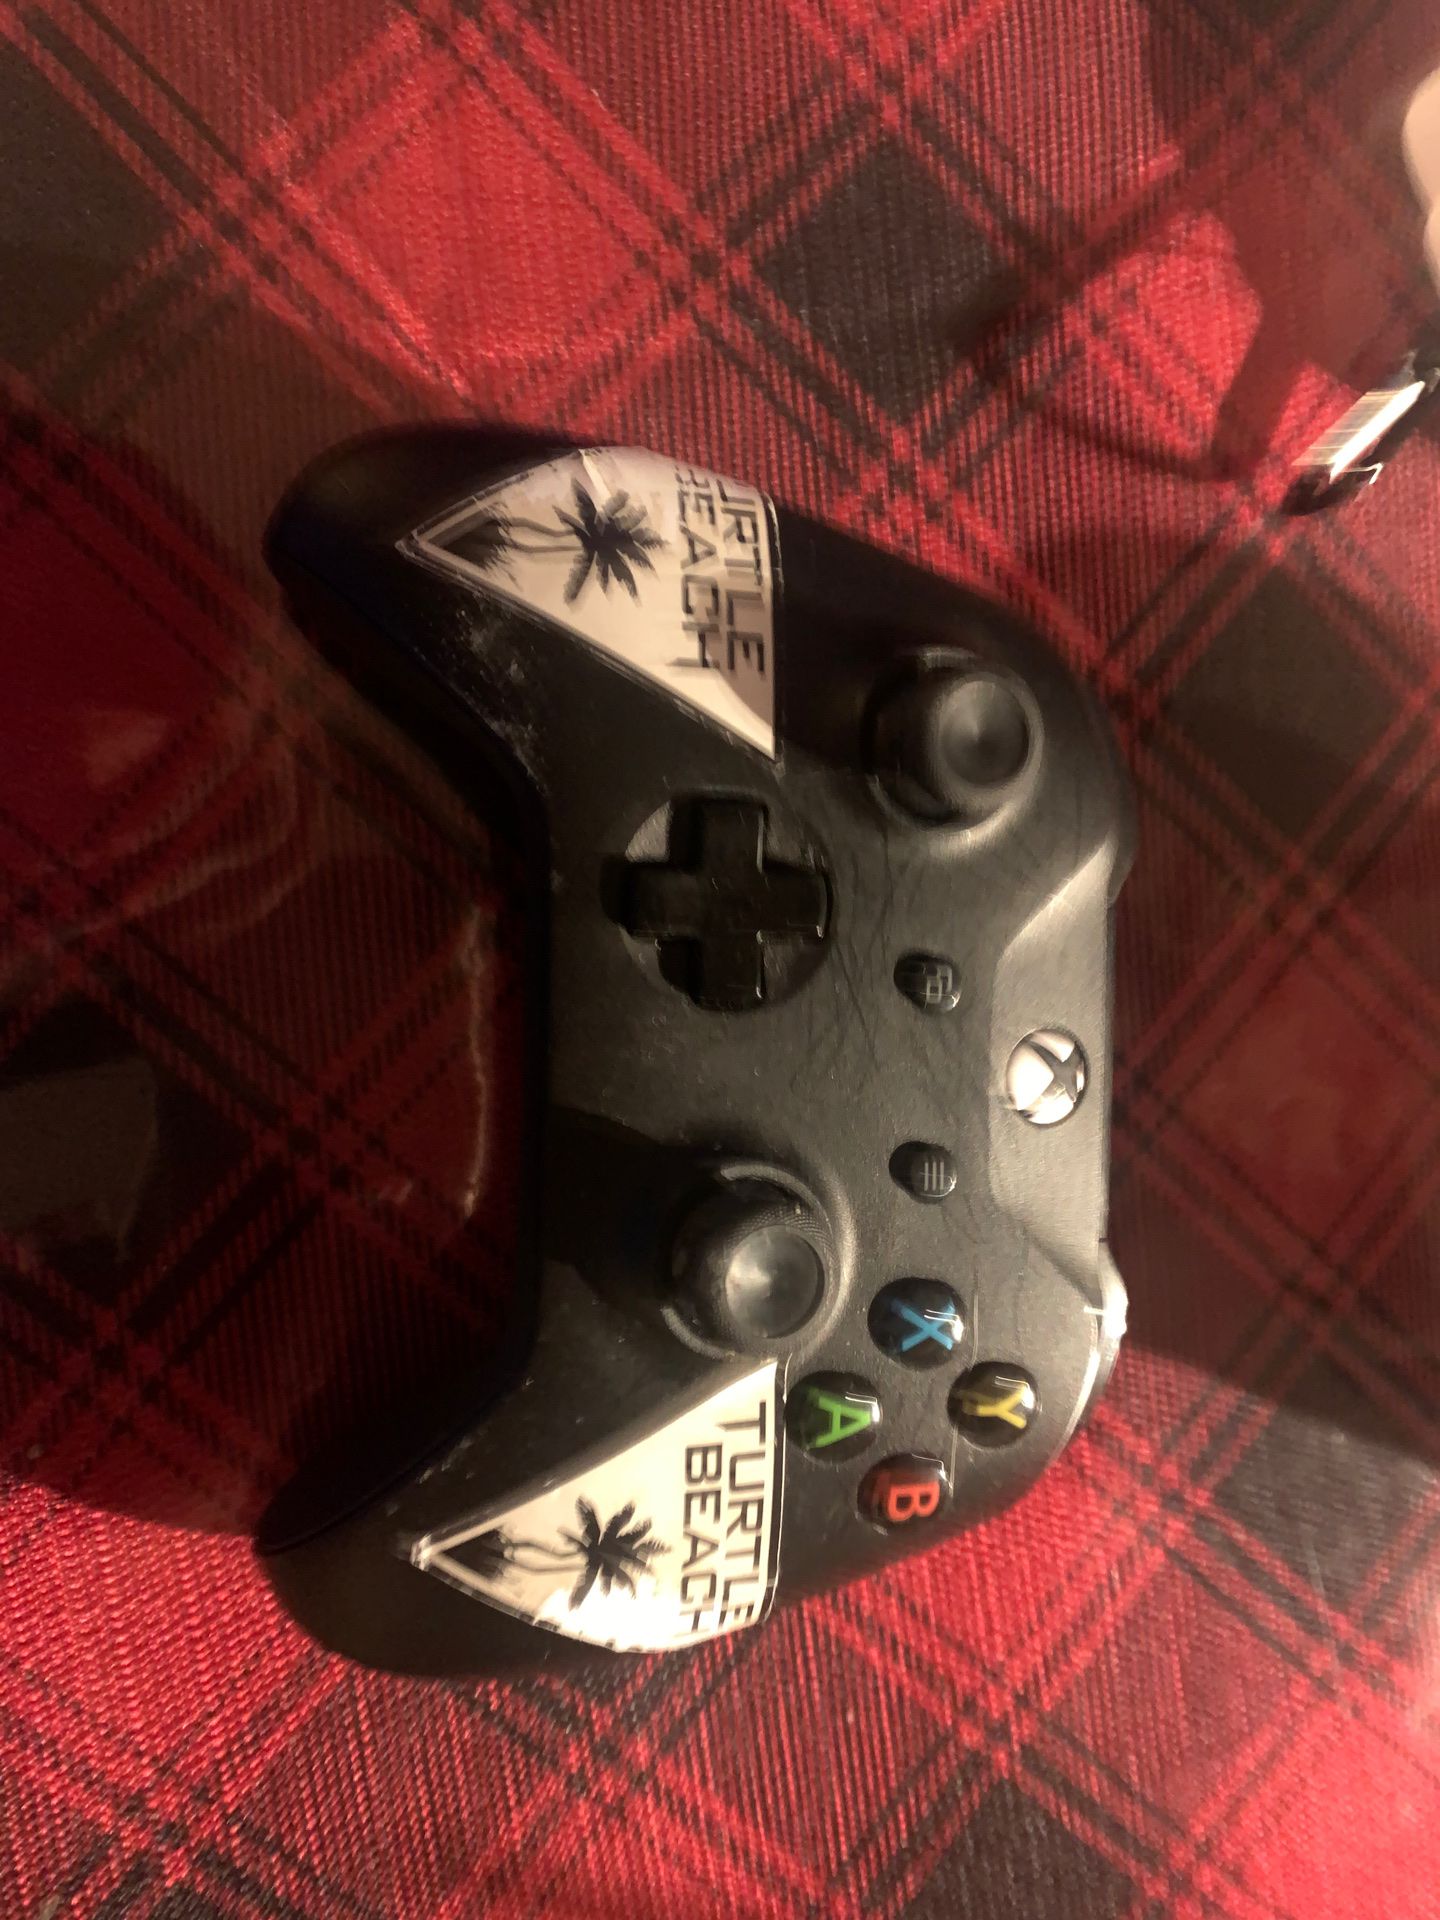 Xbox controll perfect condition